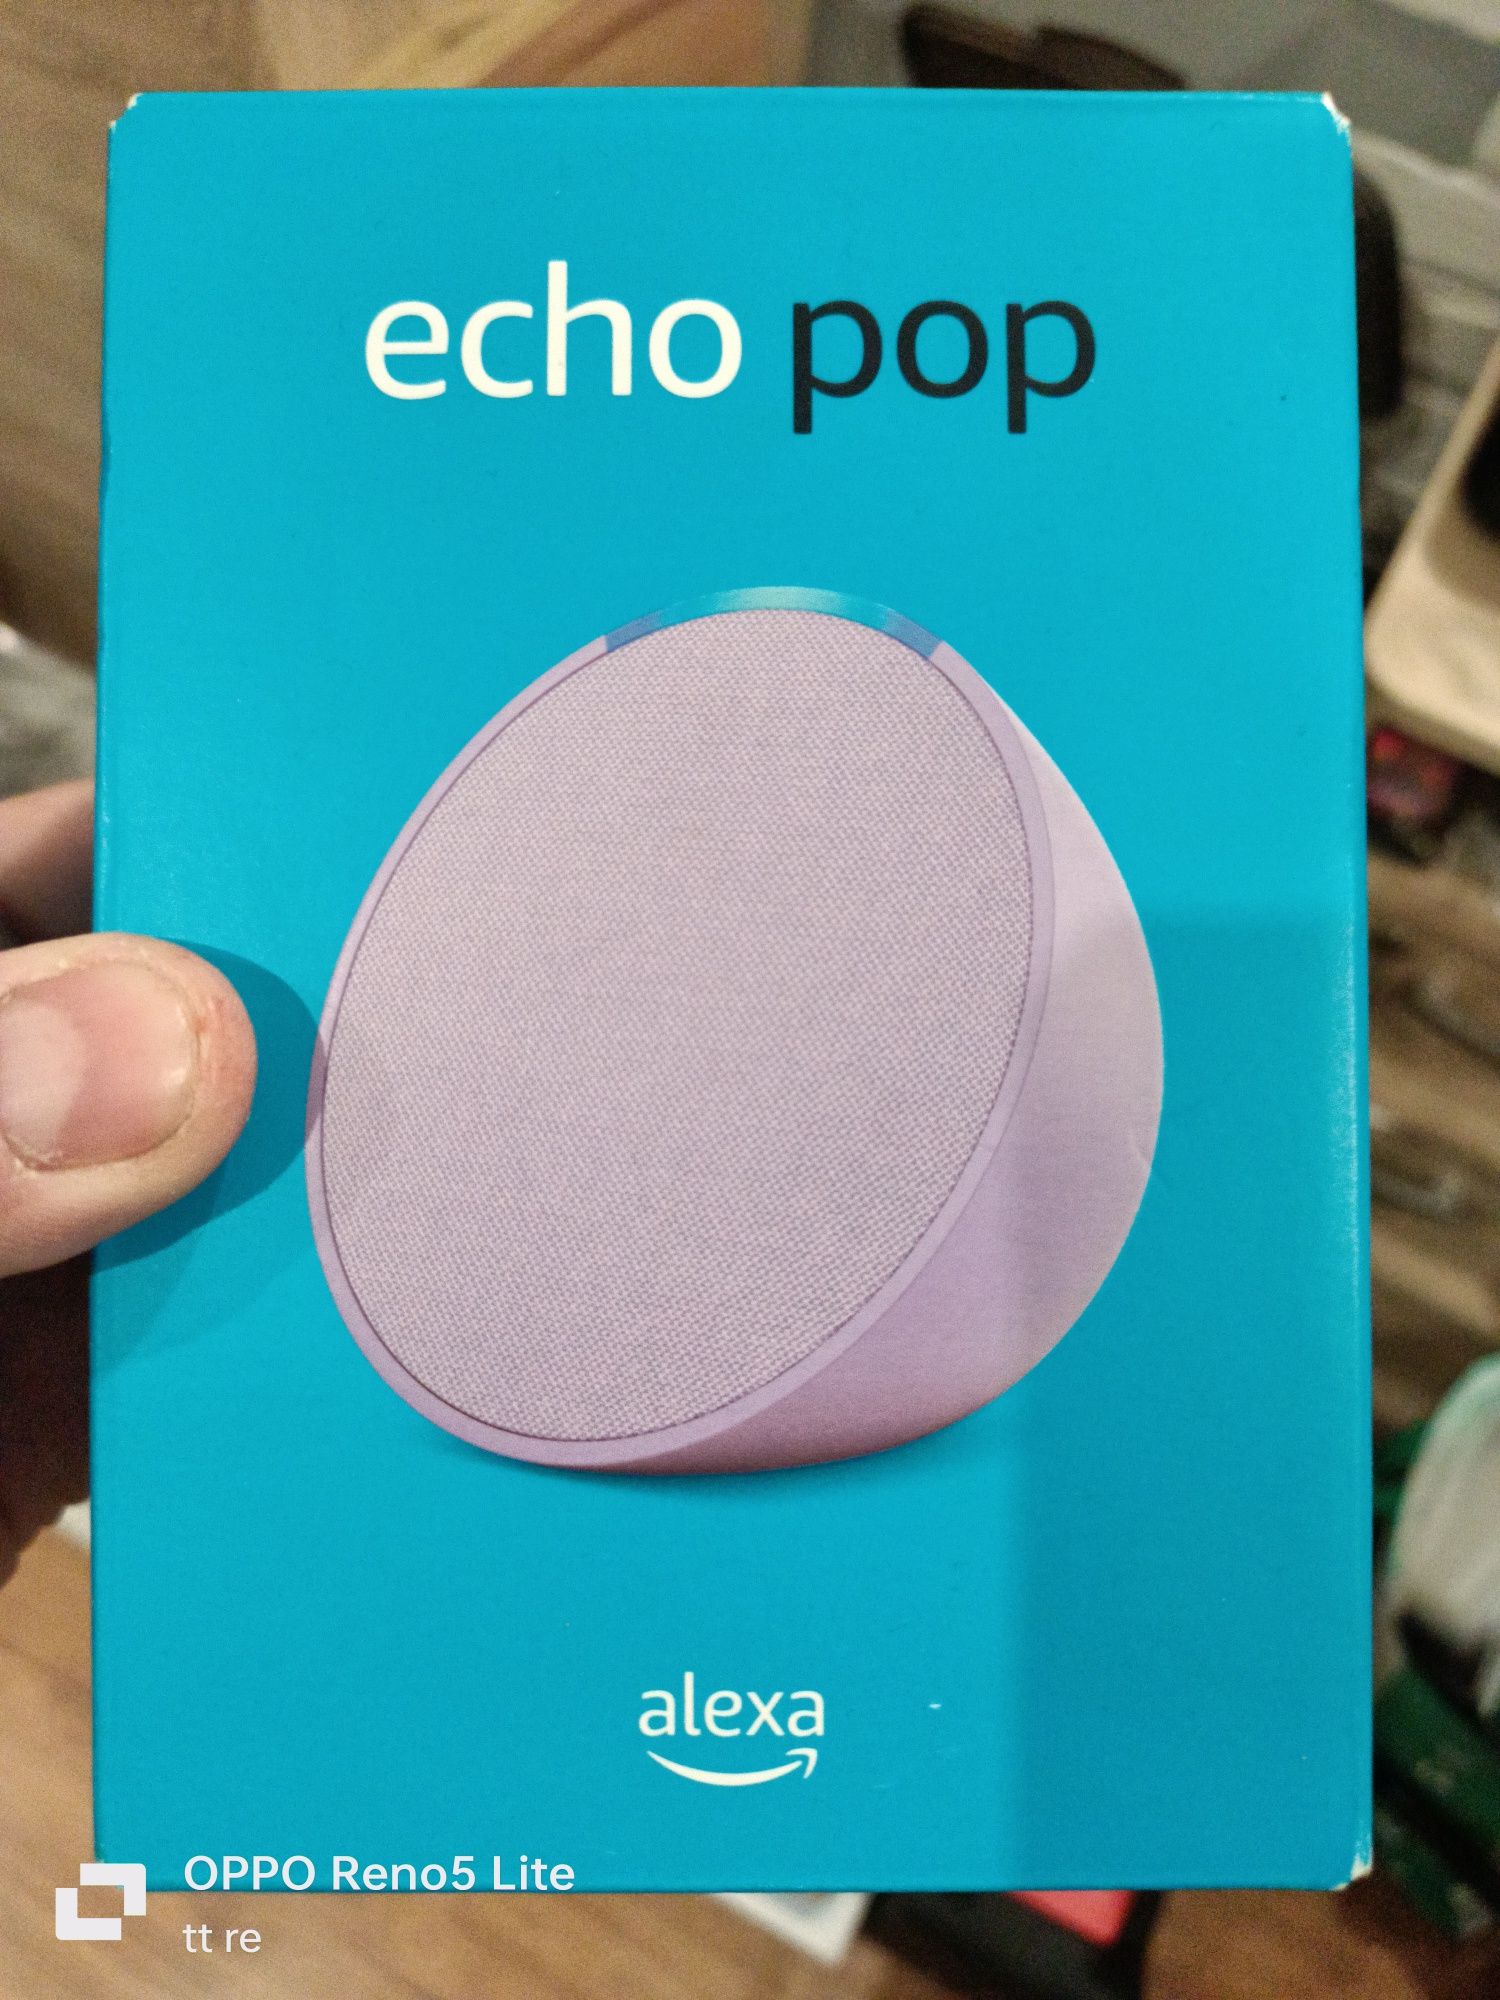 Głośnik Amazon Alexa echo pop